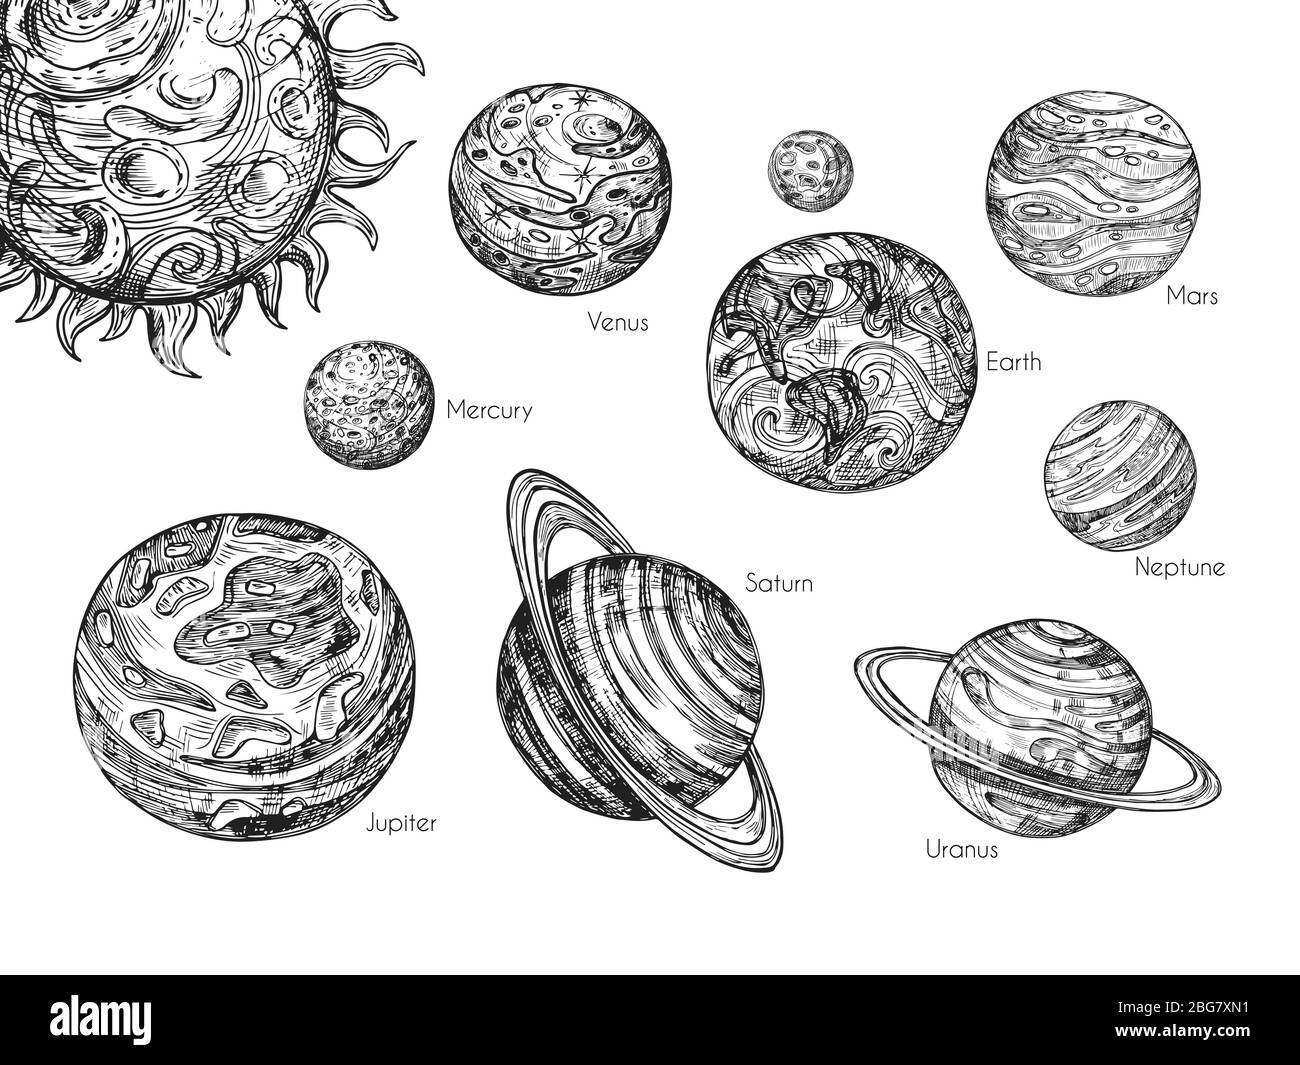 Disegna pianeti del sistema solare. Mercurio, venere, terra, Mars, giove, saturno, urano e nettuno in set vettoriale a mano disegnato per incisione. Pianeti collezione illustrazioni astratte Illustrazione Vettoriale